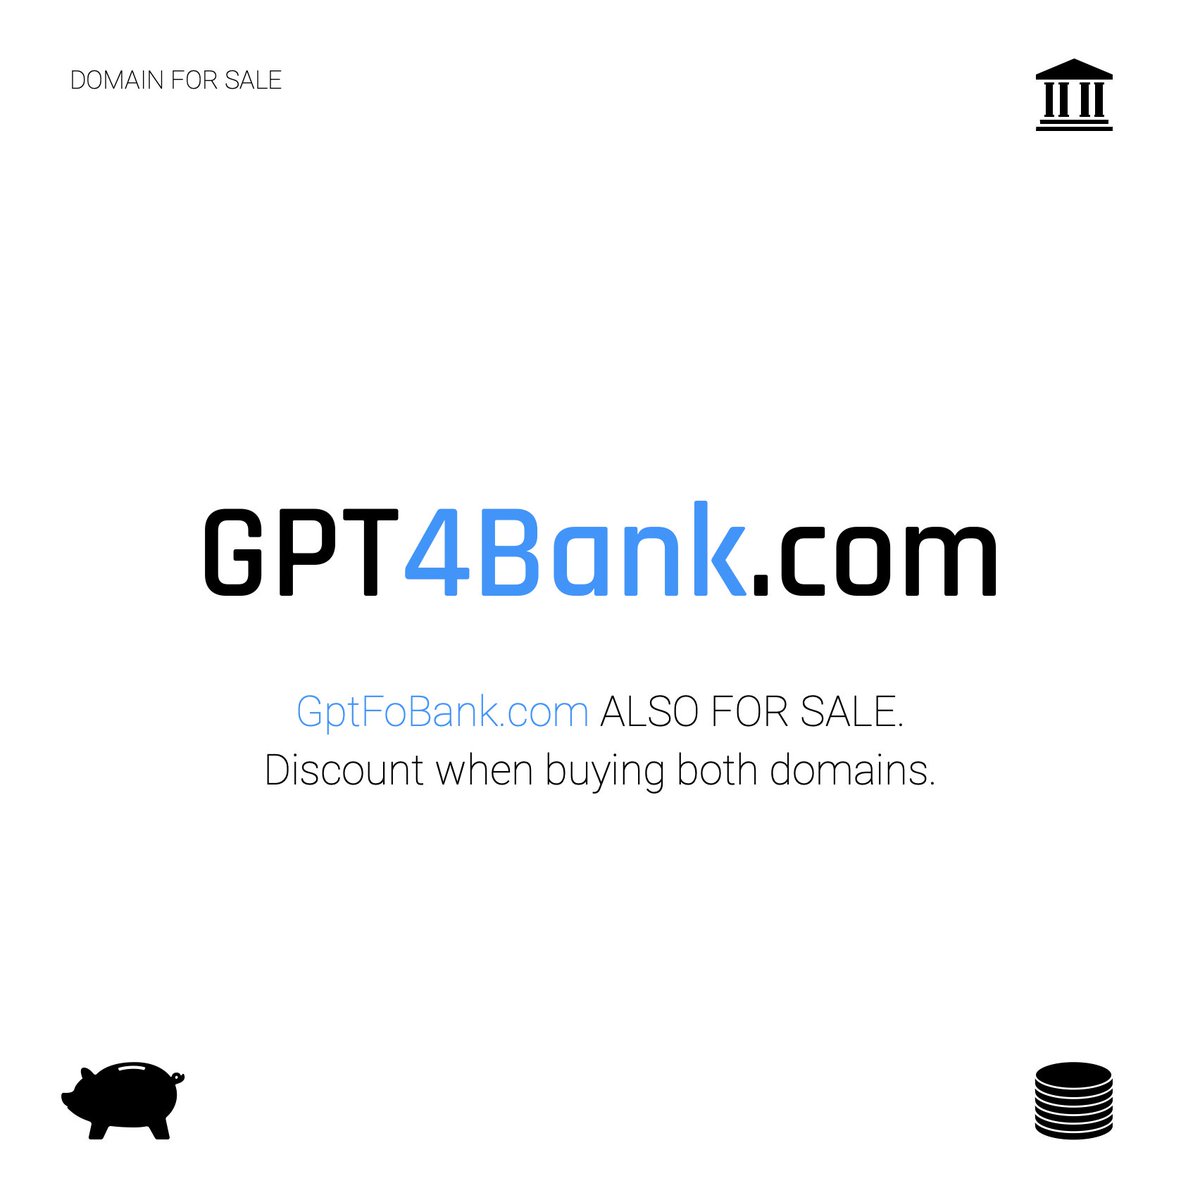 🌐  GPT4Bank.com 
⭐️  ꜰᴏʀ ꜱᴀʟᴇ

#domais #domainnames #GPT #GPT4 #Bank #AiBank #Banking #bankaudits #Audits #Auditors #Inspectors #LLMs #agents #AiAutomation #BankAutomation #AI #Automation #investorawareness 
__